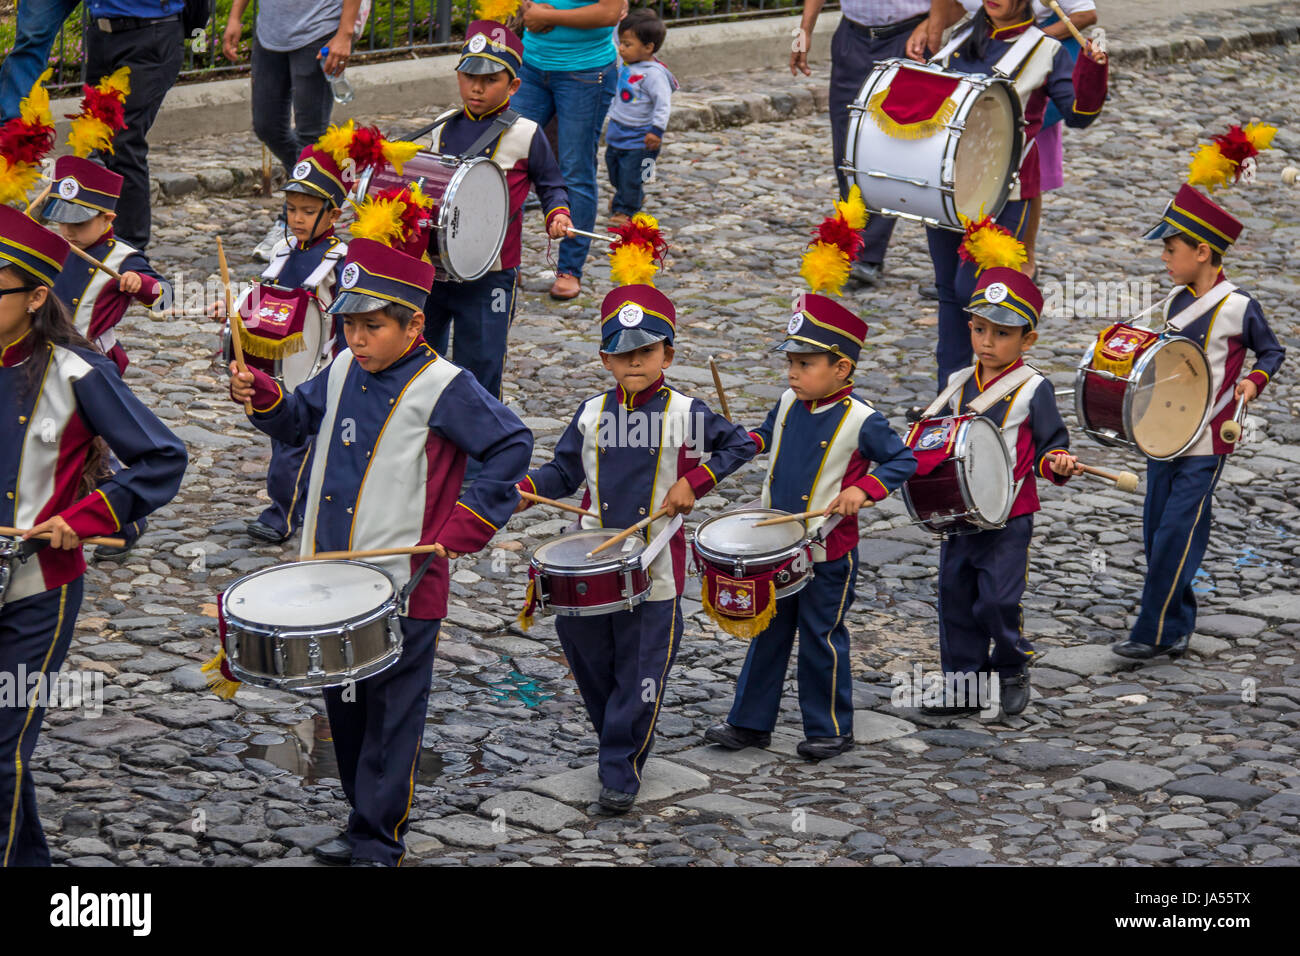 Groupe de petits enfants Marching Band en uniforme - Antigua, Guatemala Banque D'Images